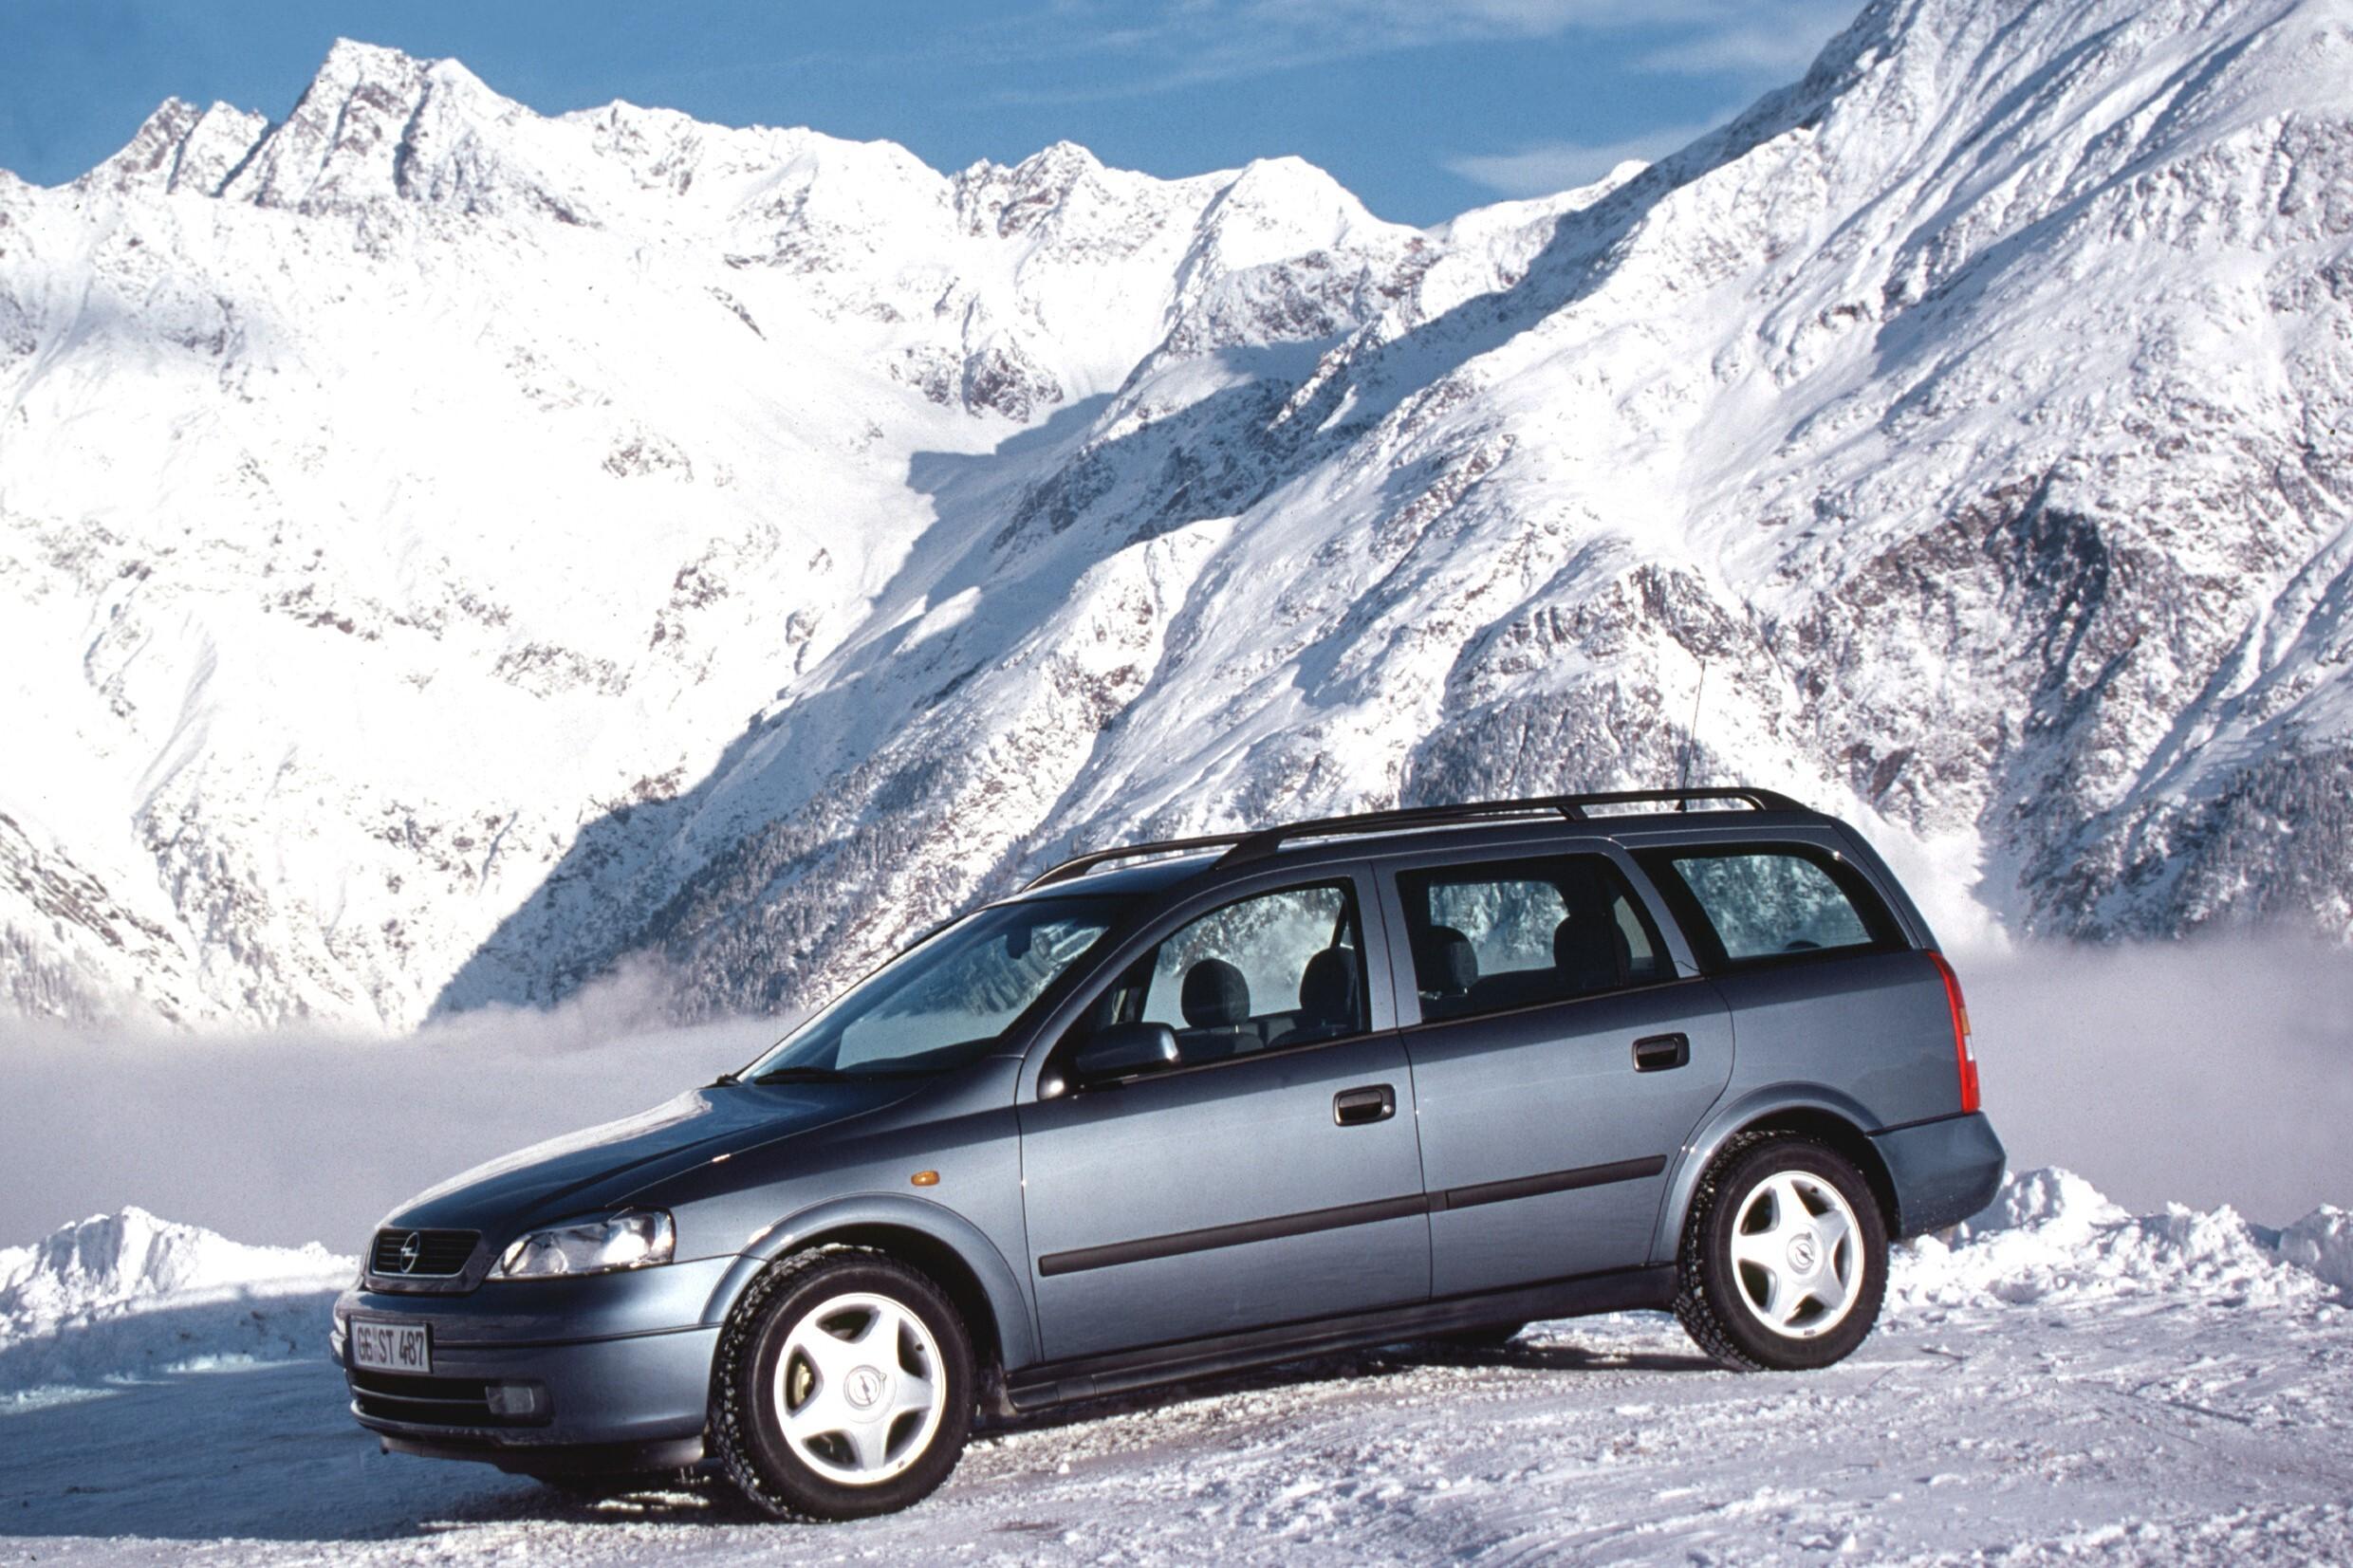 Джи караван. Opel Astra g 1998 универсал. Opel Astra Caravan 1998. Opel Astra универсал 1998. Opel Astra g Caravan.